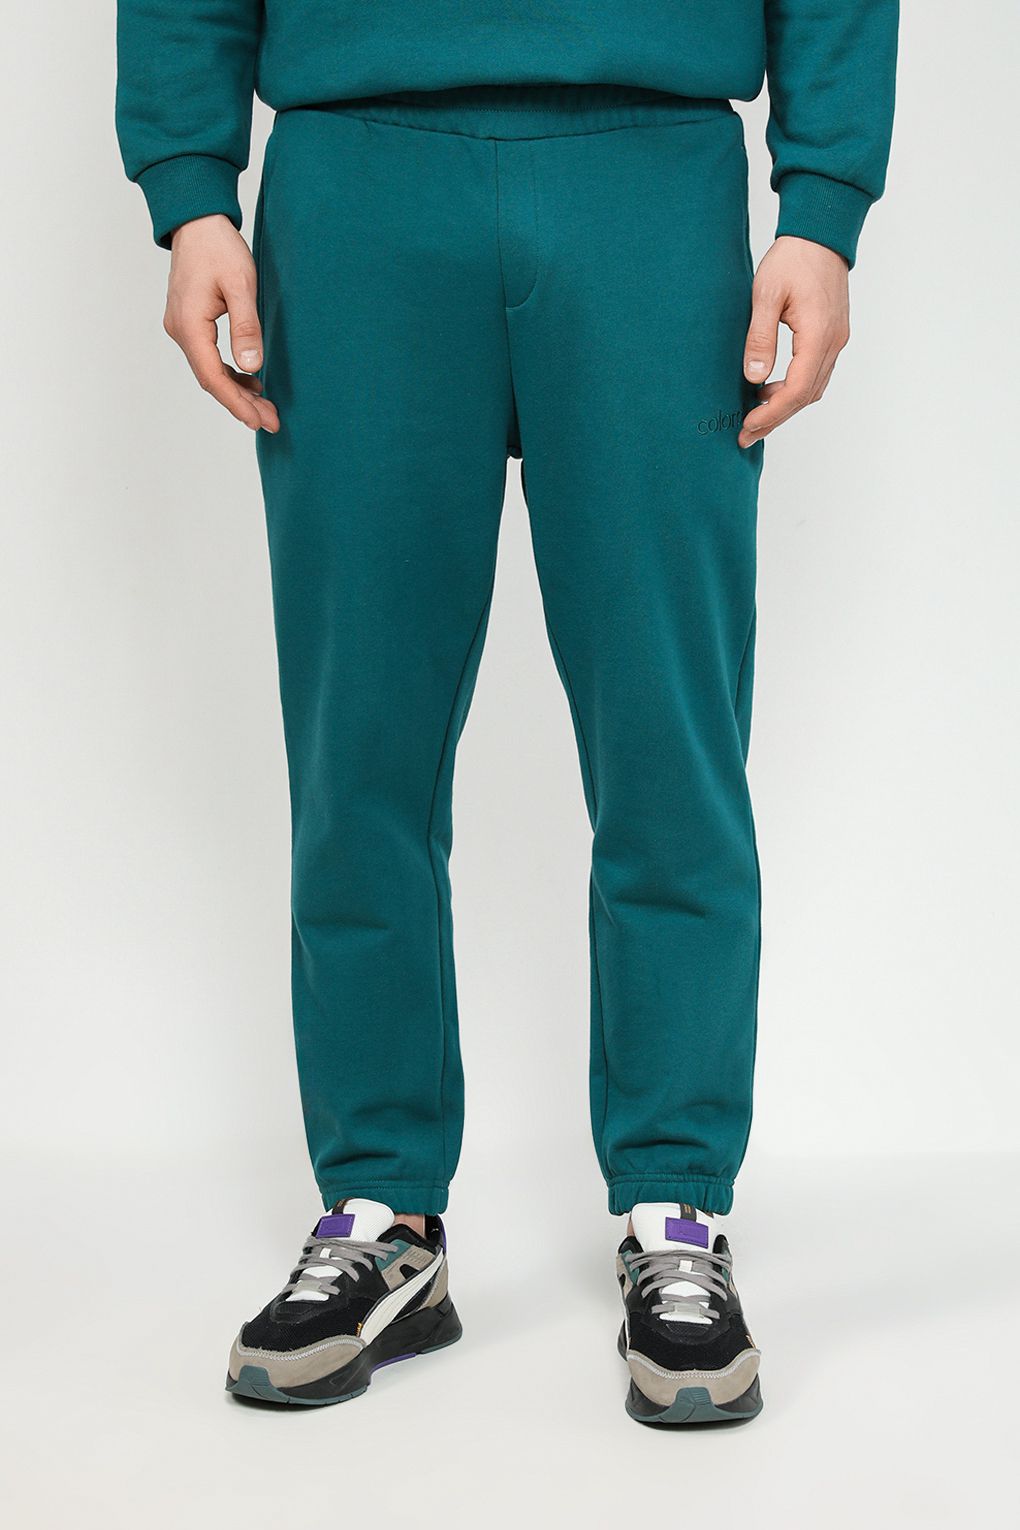 Спортивные брюки мужские COLORPLAY CP23122386 зеленые 2XL